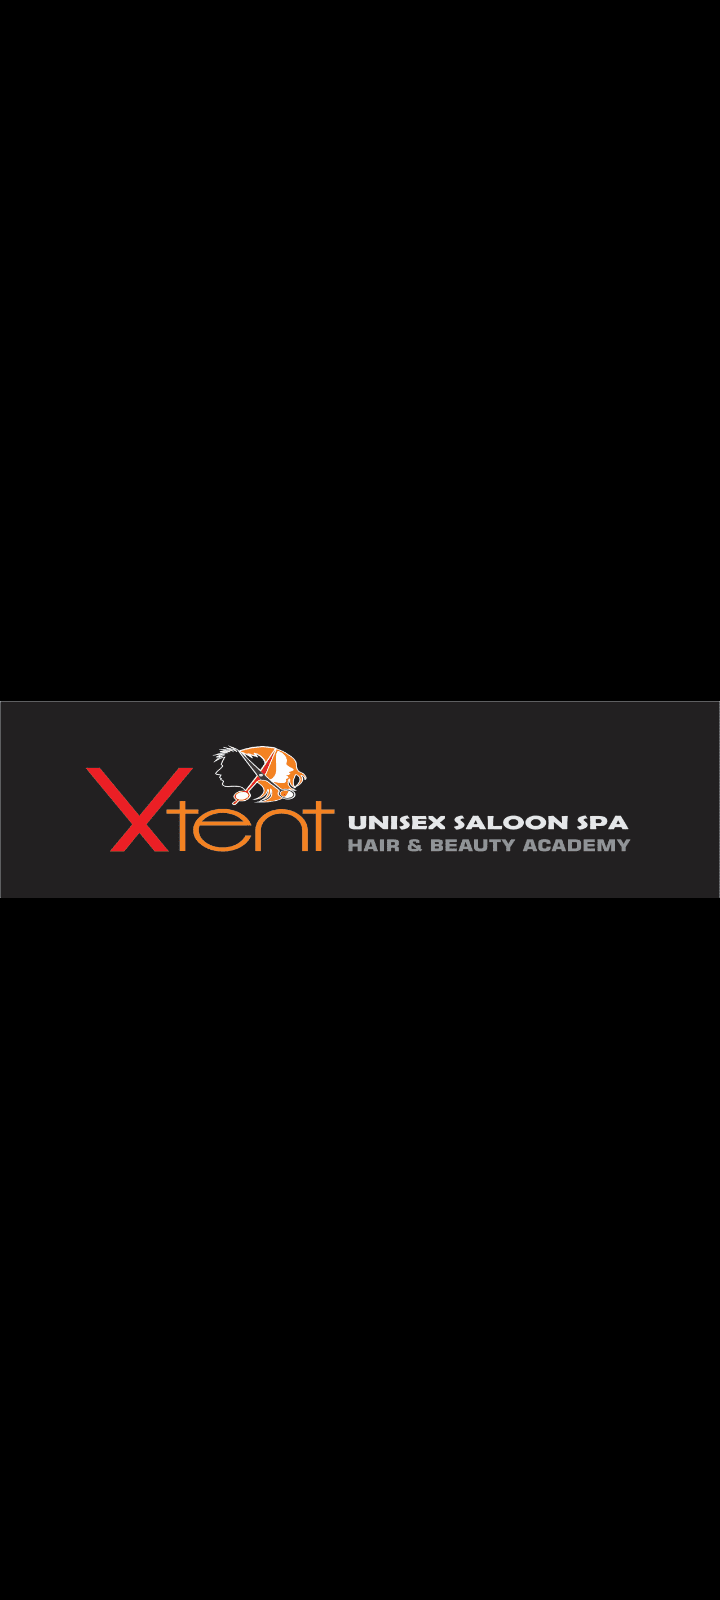 Xtent Unisex Salon Spa